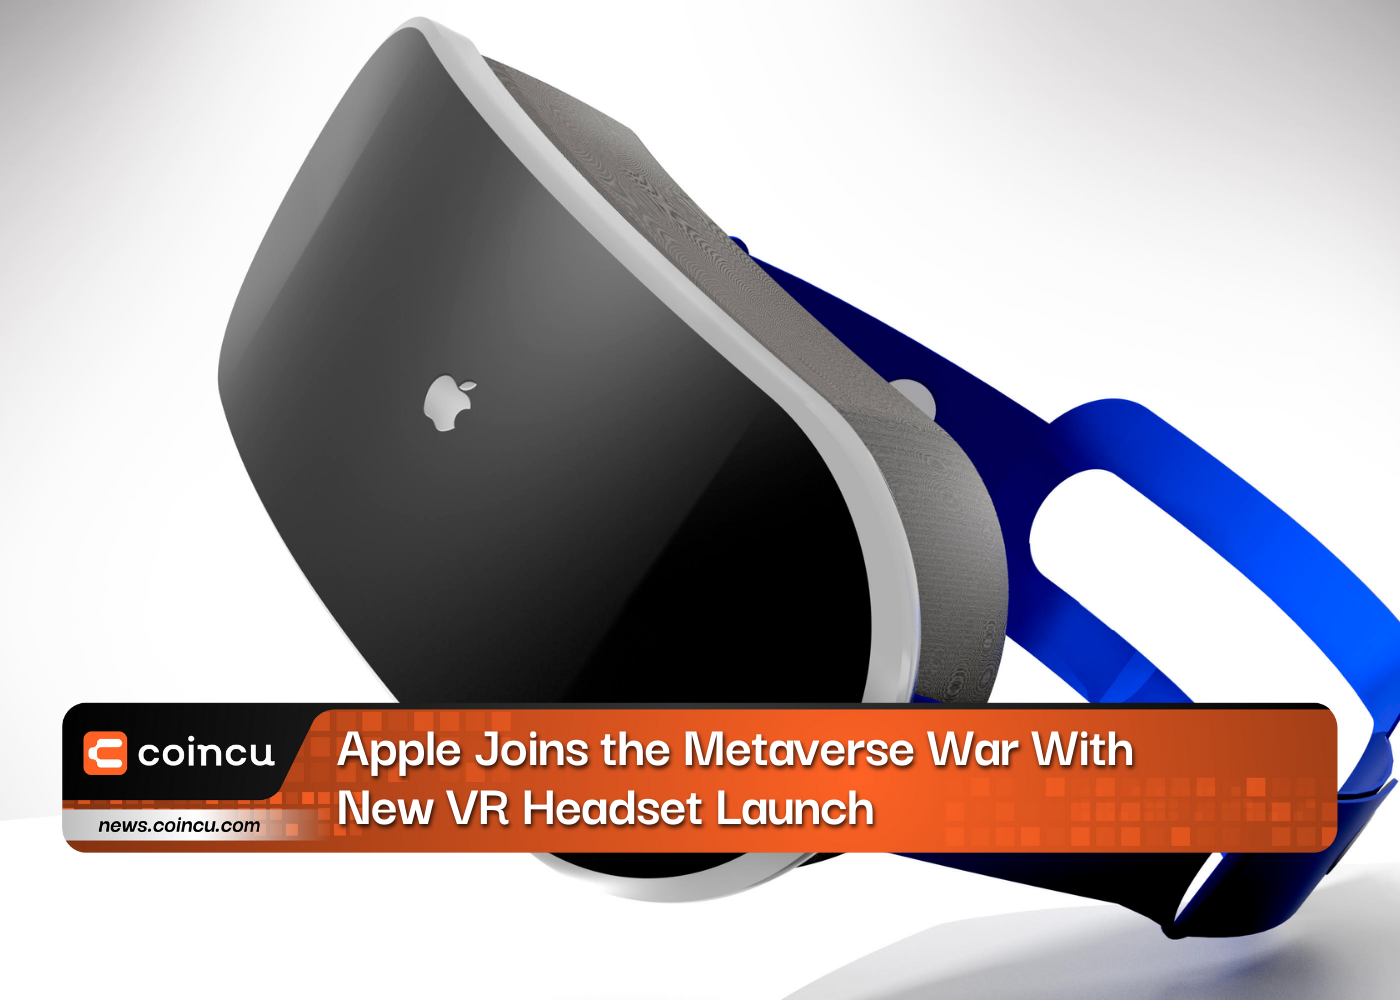 Apple, 새로운 VR 헤드셋 출시로 메타버스 전쟁에 합류